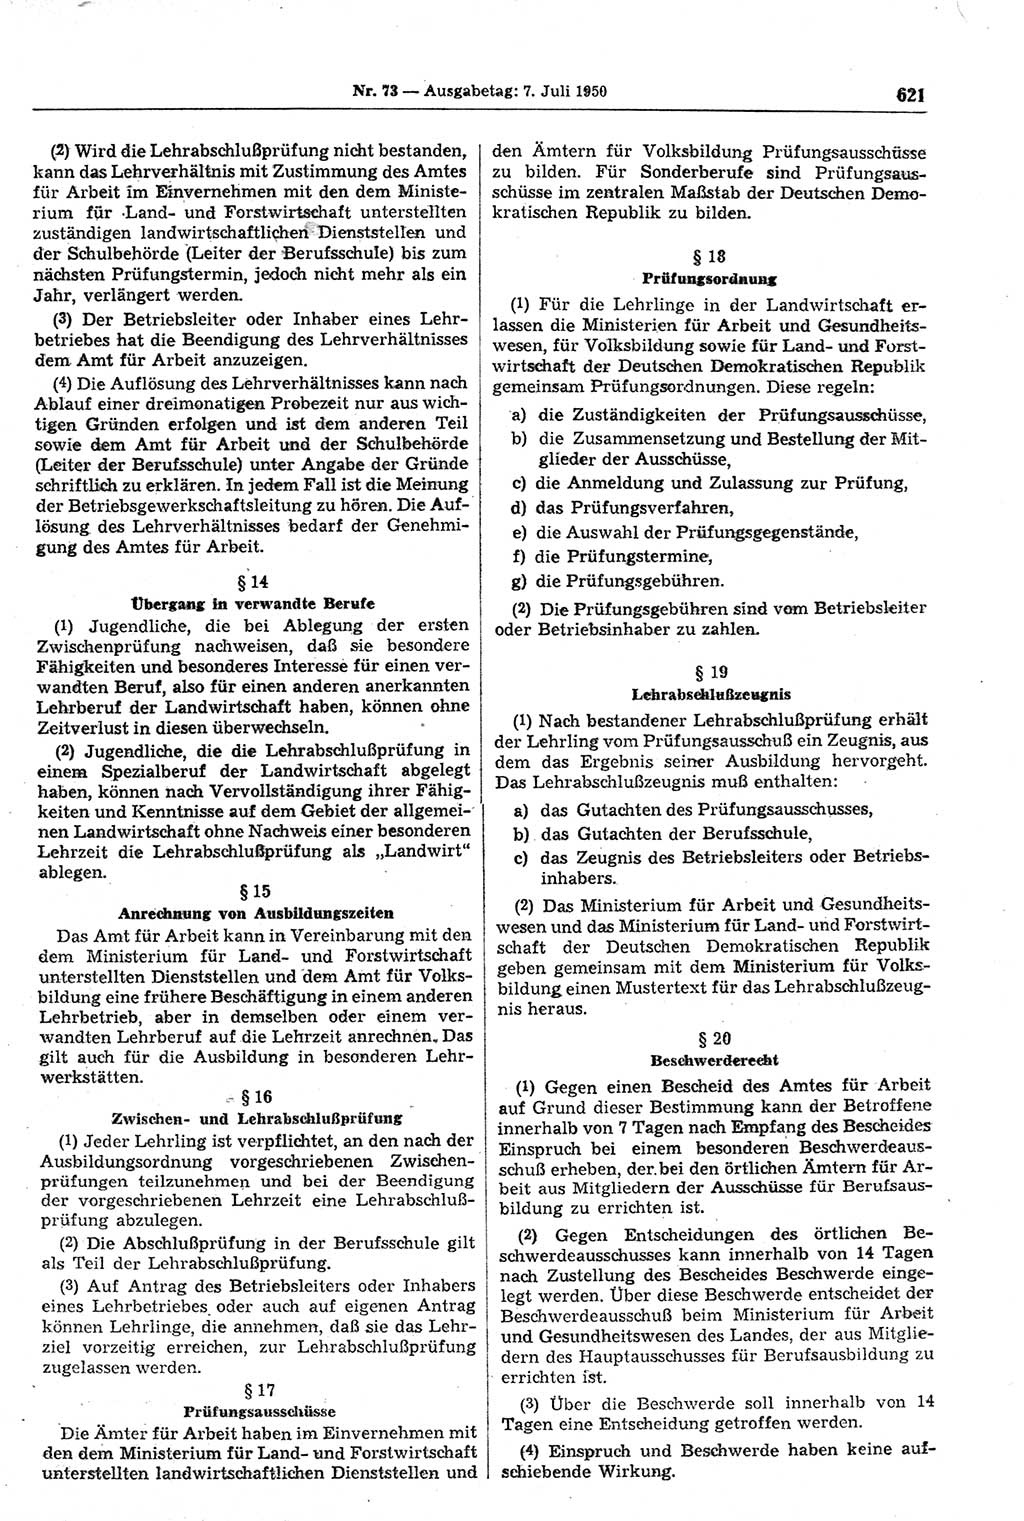 Gesetzblatt (GBl.) der Deutschen Demokratischen Republik (DDR) 1950, Seite 621 (GBl. DDR 1950, S. 621)